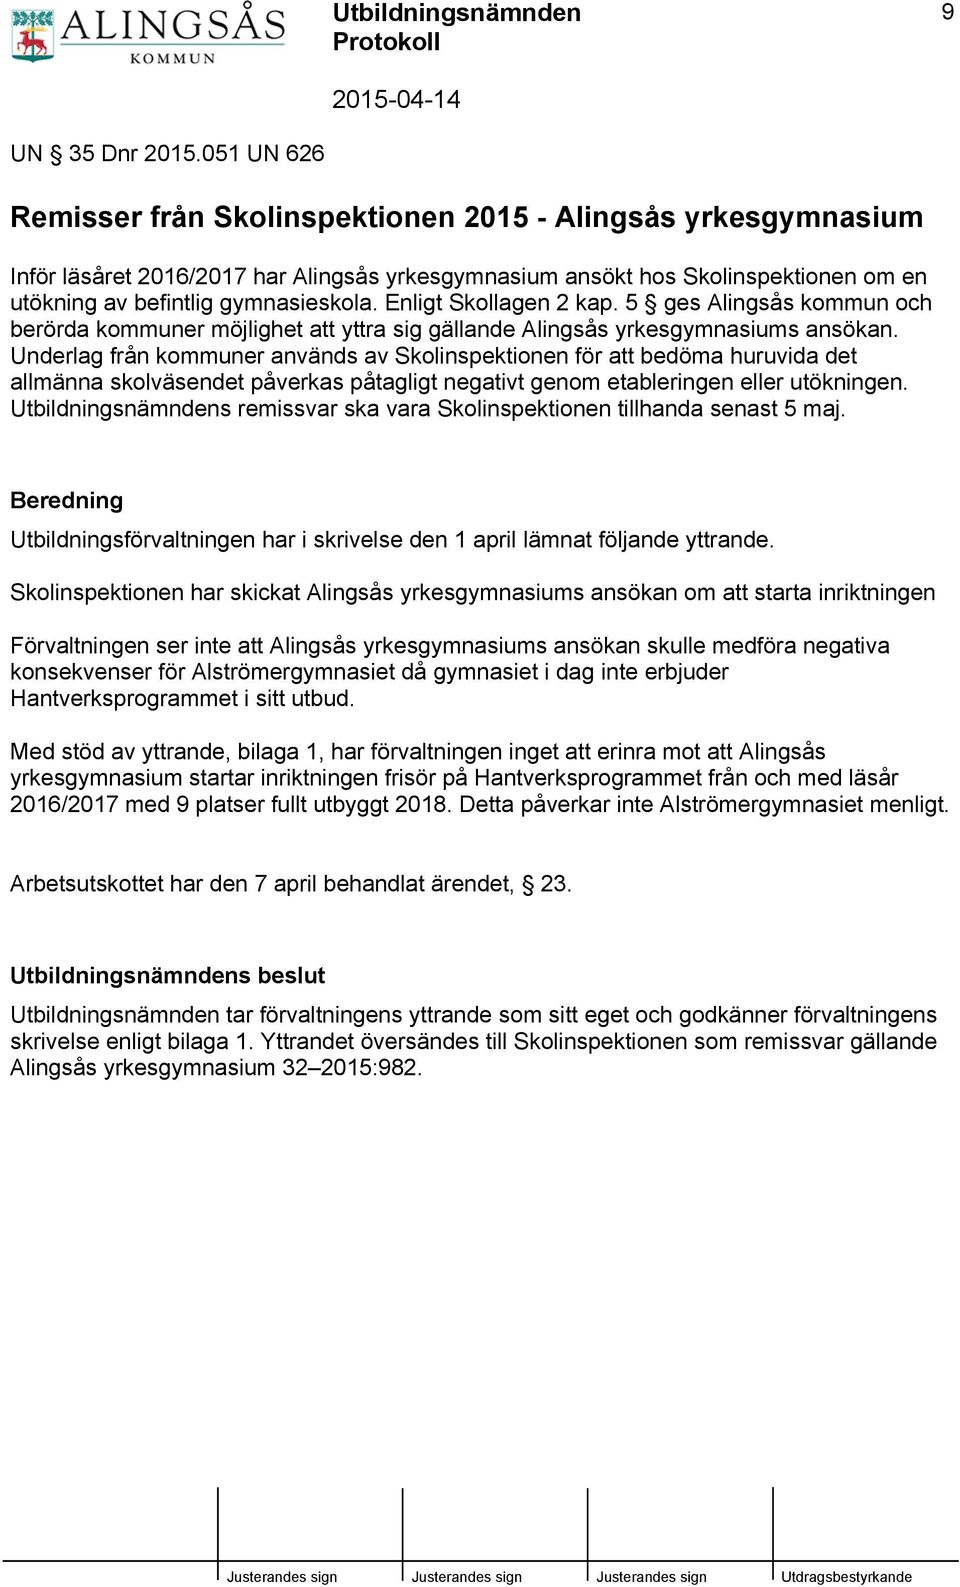 Enligt Skollagen 2 kap. 5 ges Alingsås kommun och berörda kommuner möjlighet att yttra sig gällande Alingsås yrkesgymnasiums ansökan.